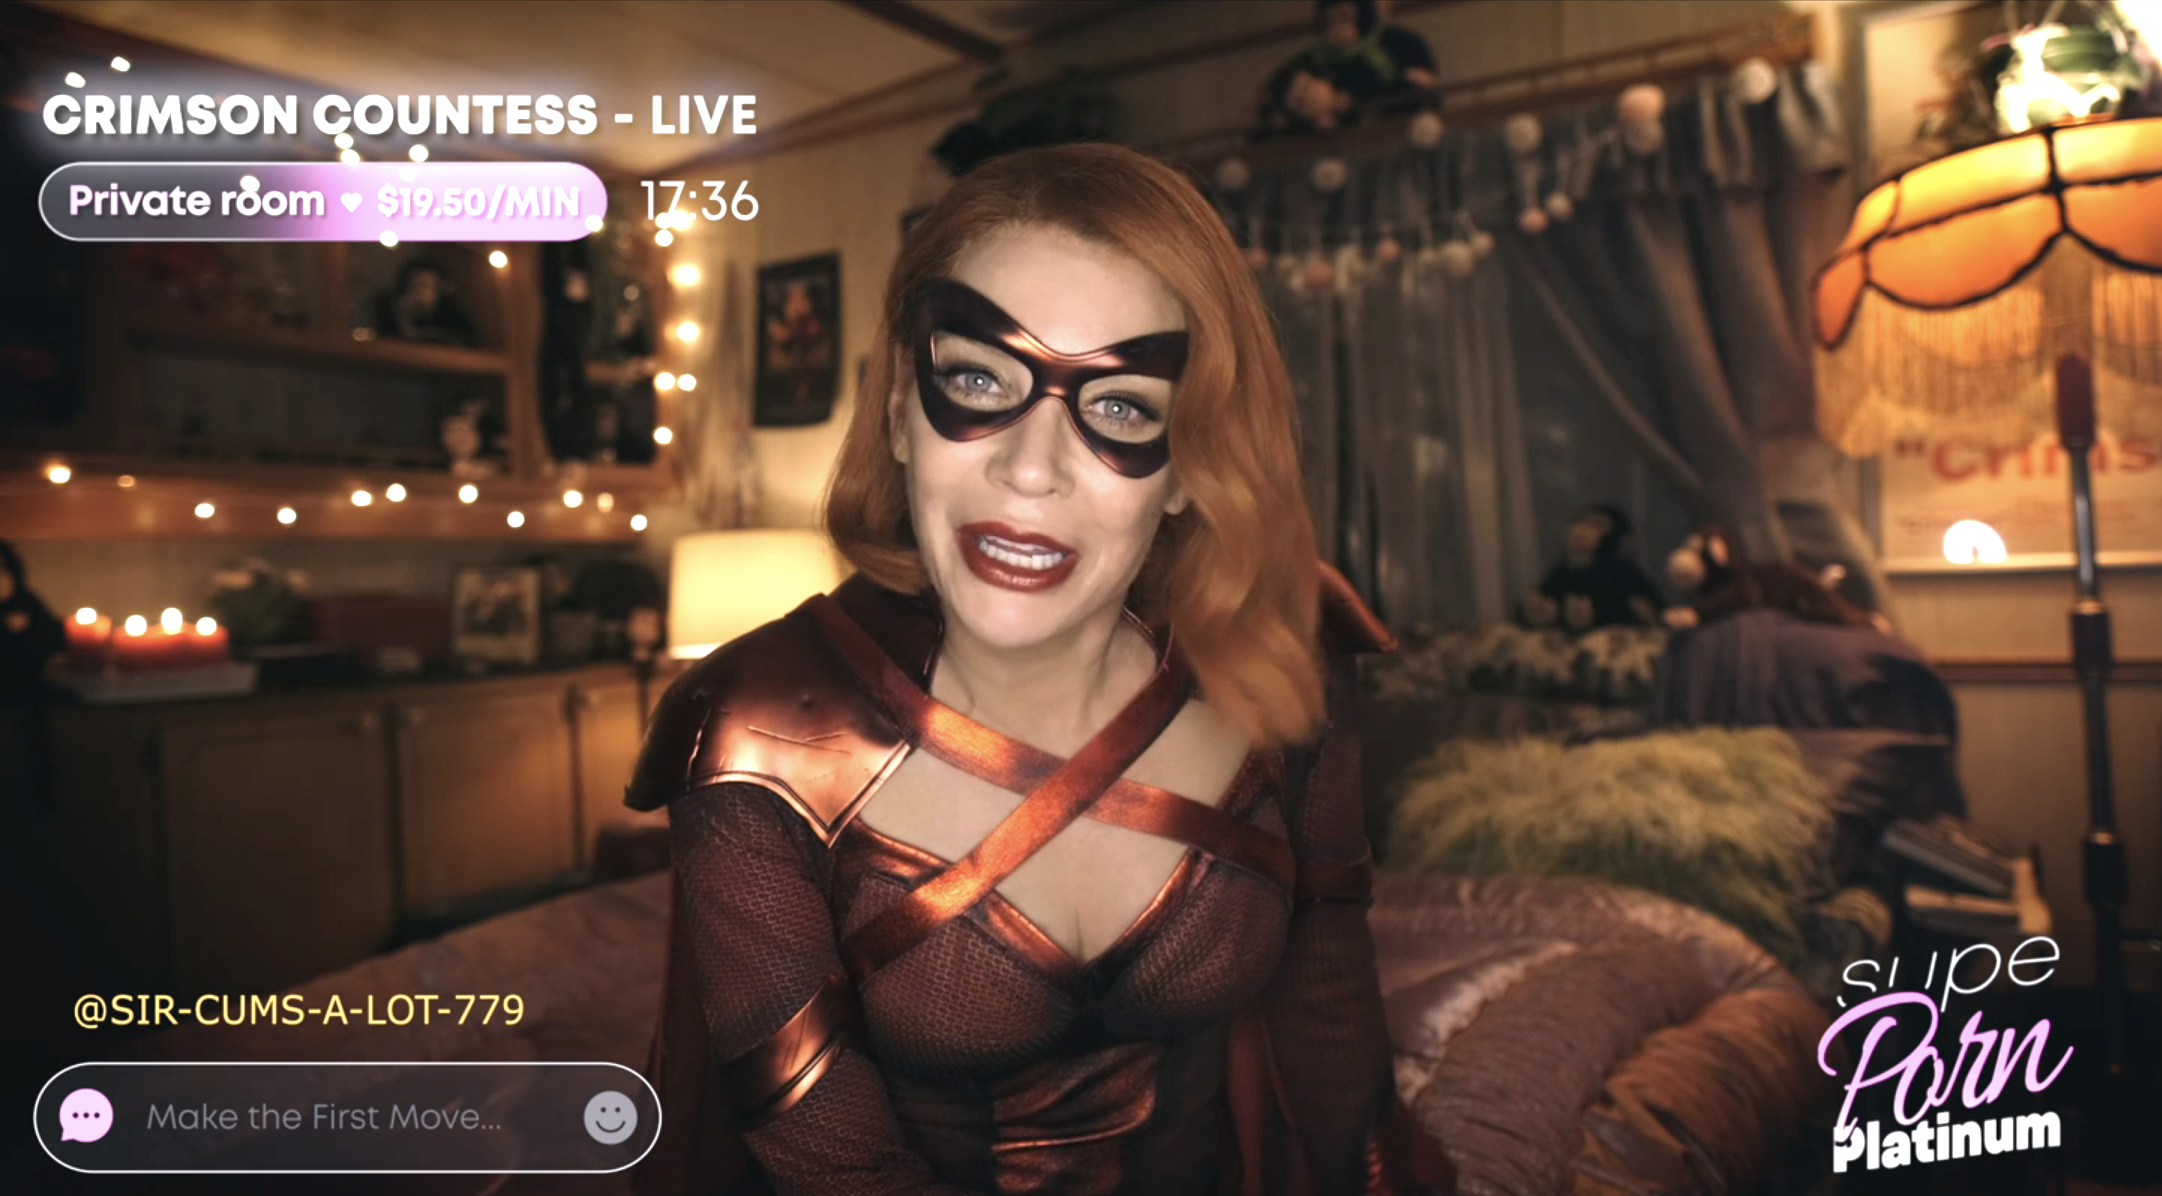 Live Webcam Teen Girls - Seth Rogen's 'The Boys' Crimson Countess Webcam Cameo, Explained